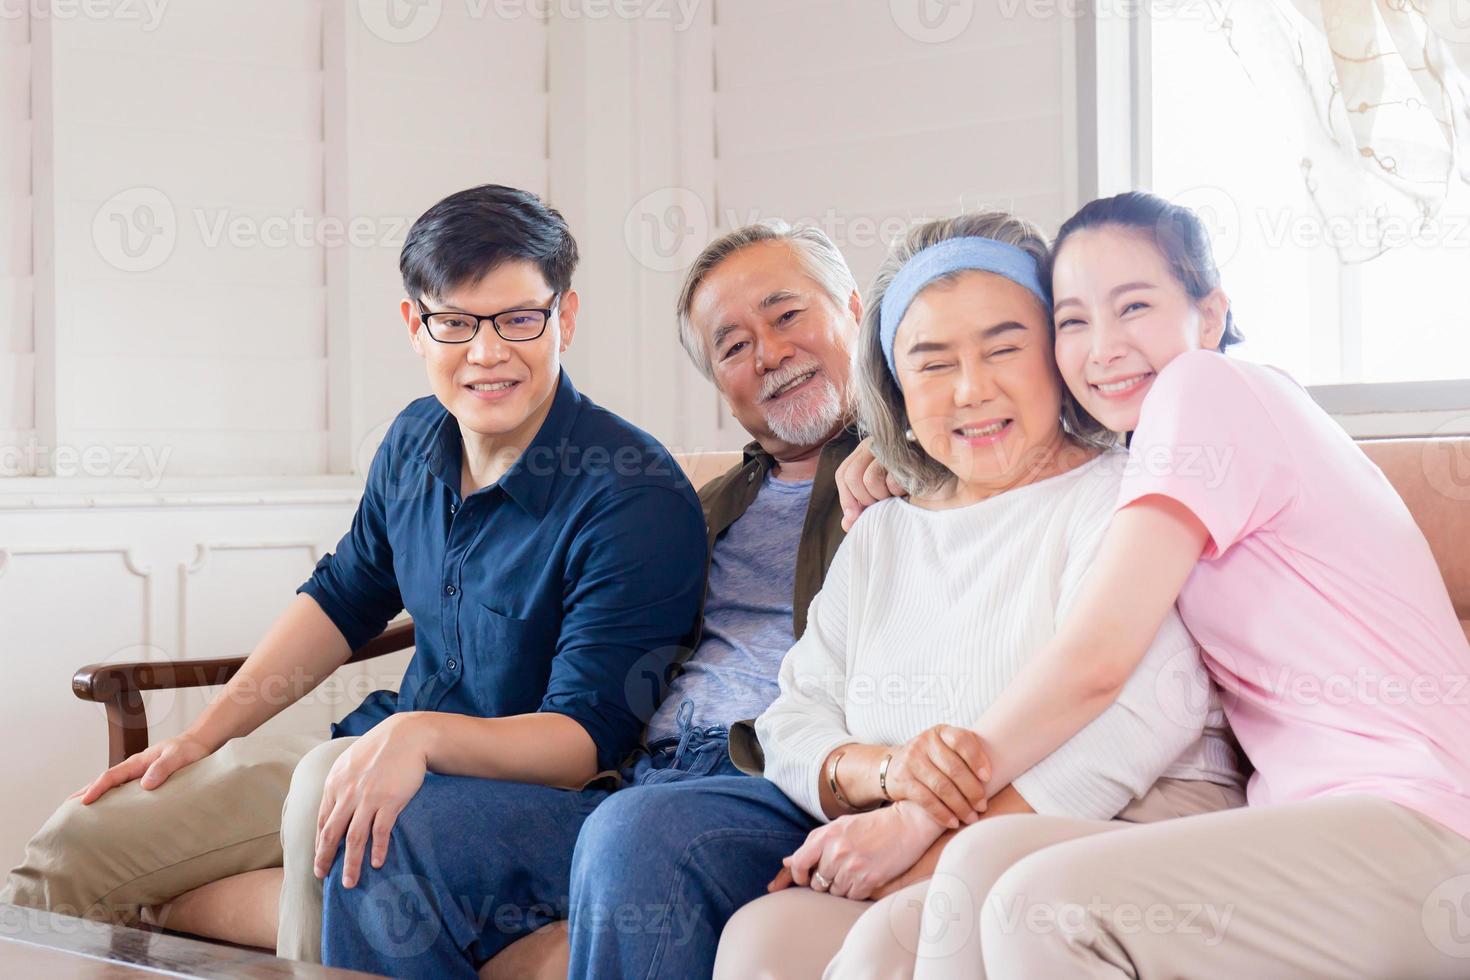 alegre família asiática na sala de estar, pai sênior mãe e filho de meia idade e filha sentada no sofá olhando para a câmera, conceitos de família de felicidade foto